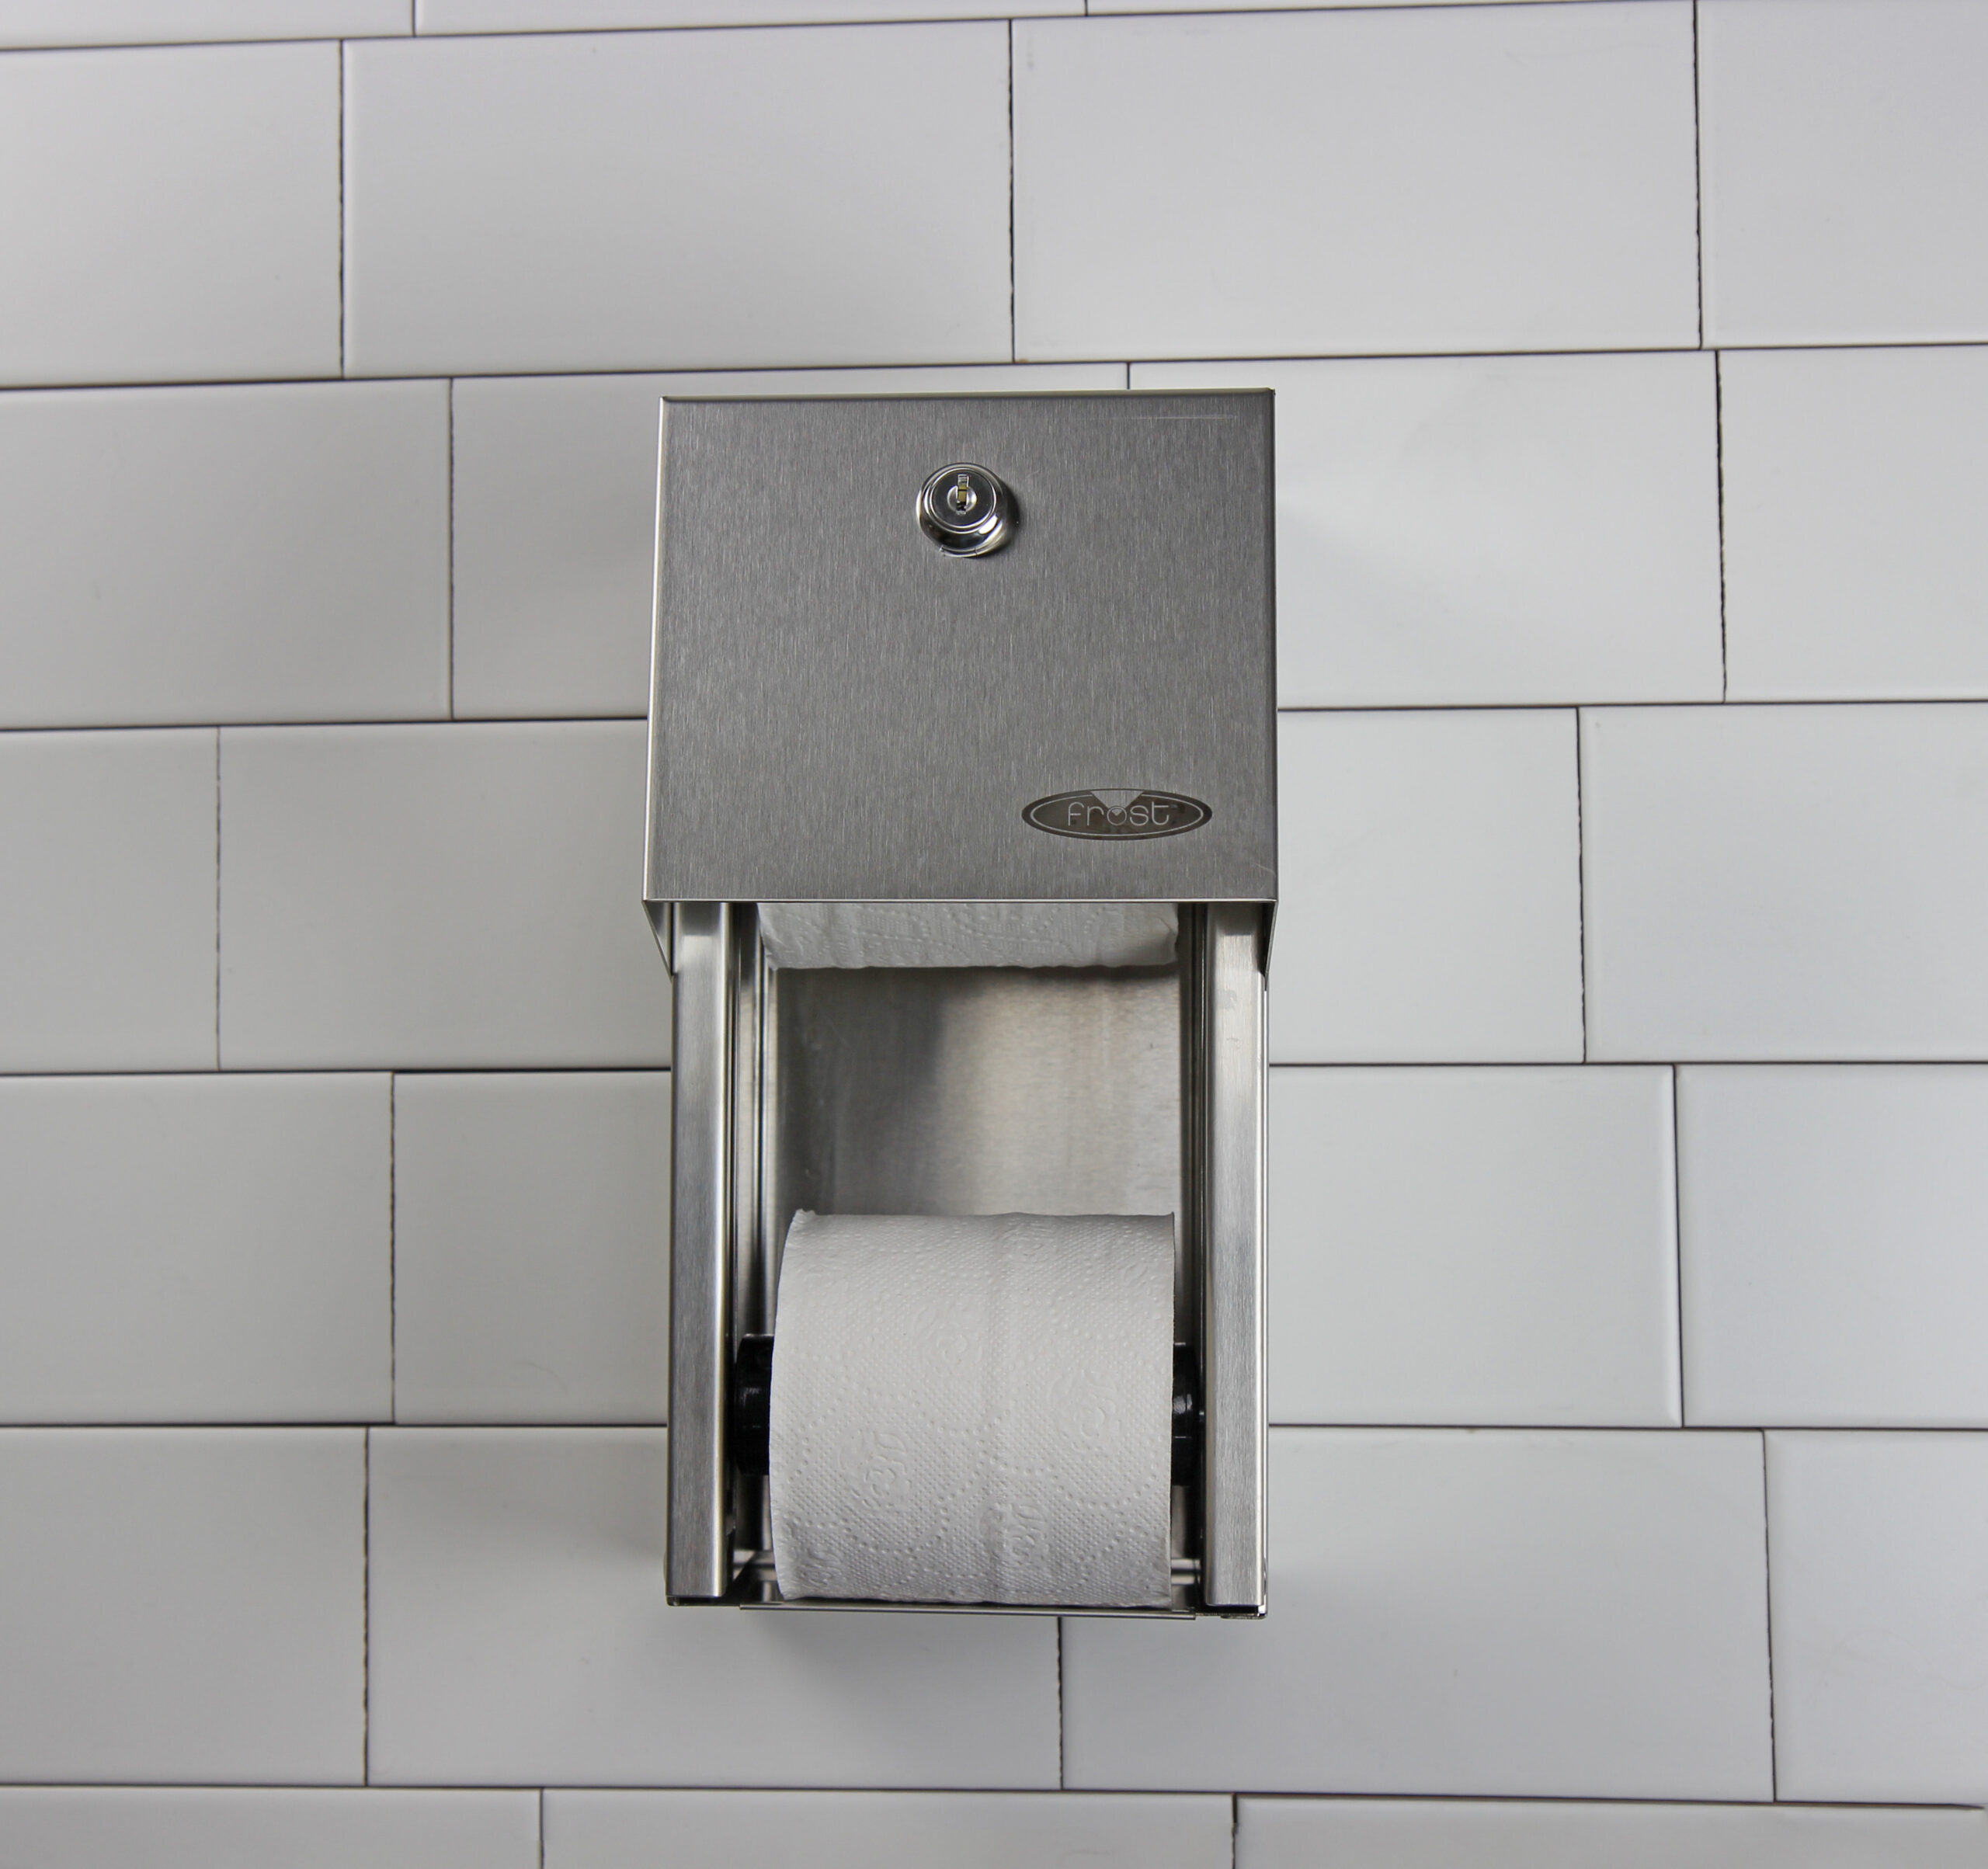 Papier toilette 2 couches blanc 6 rouleaux pour distributeur - Fripa